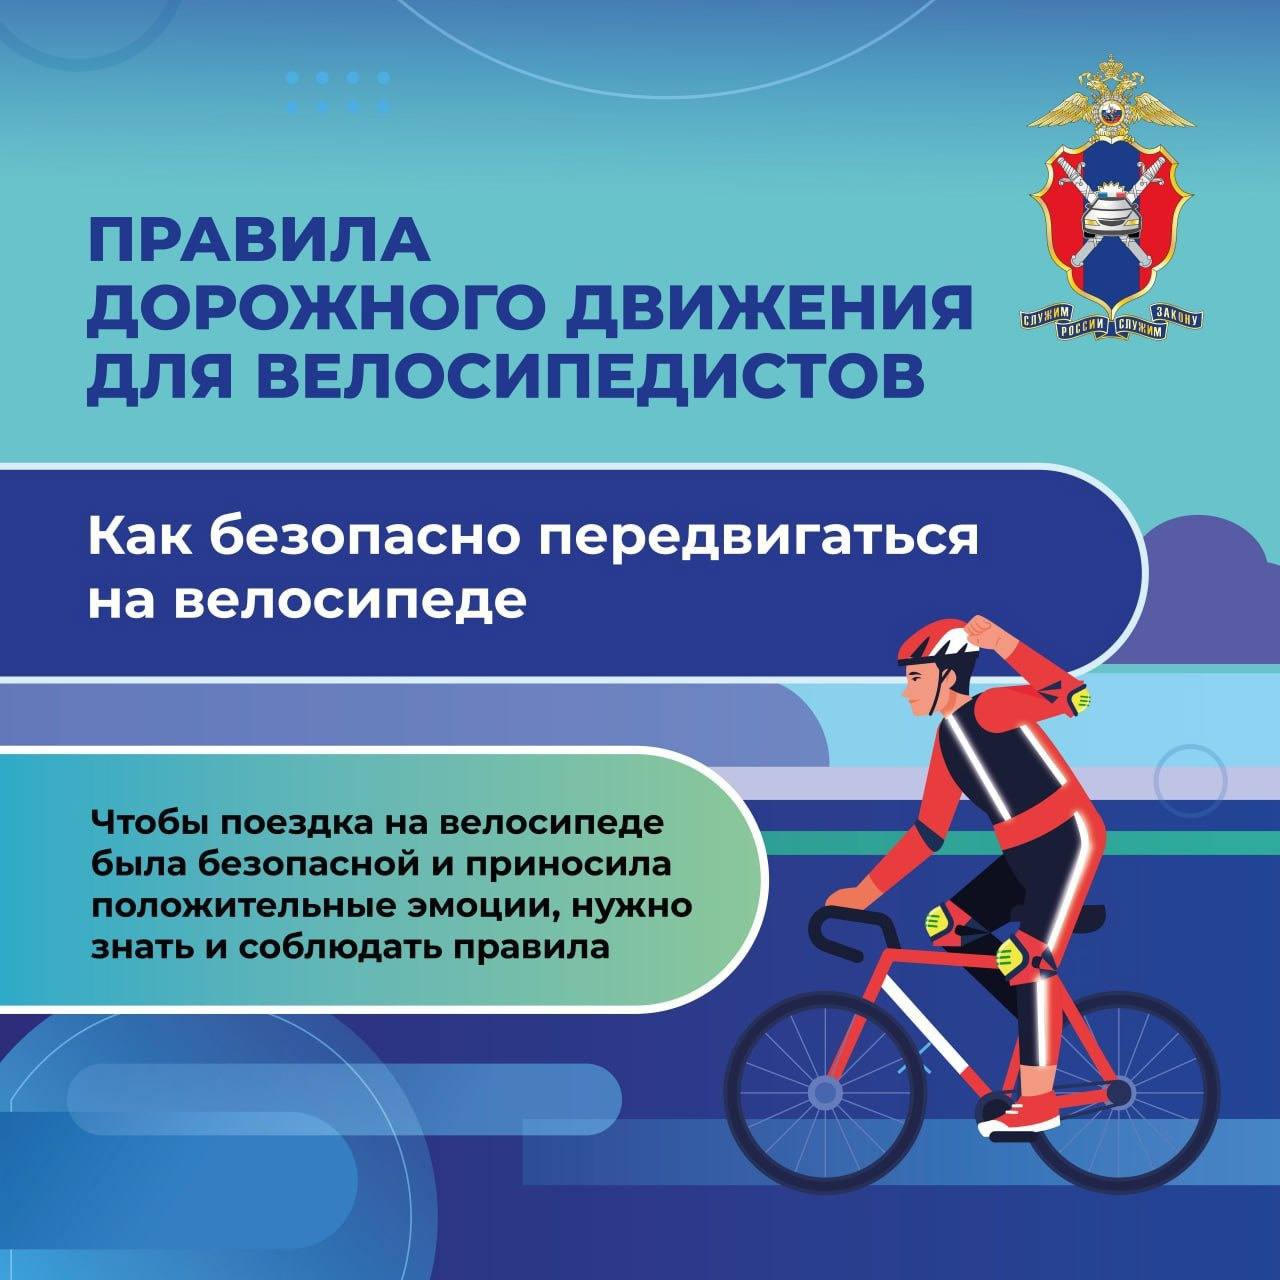 Правила дорожного движения для велосипедистов!.